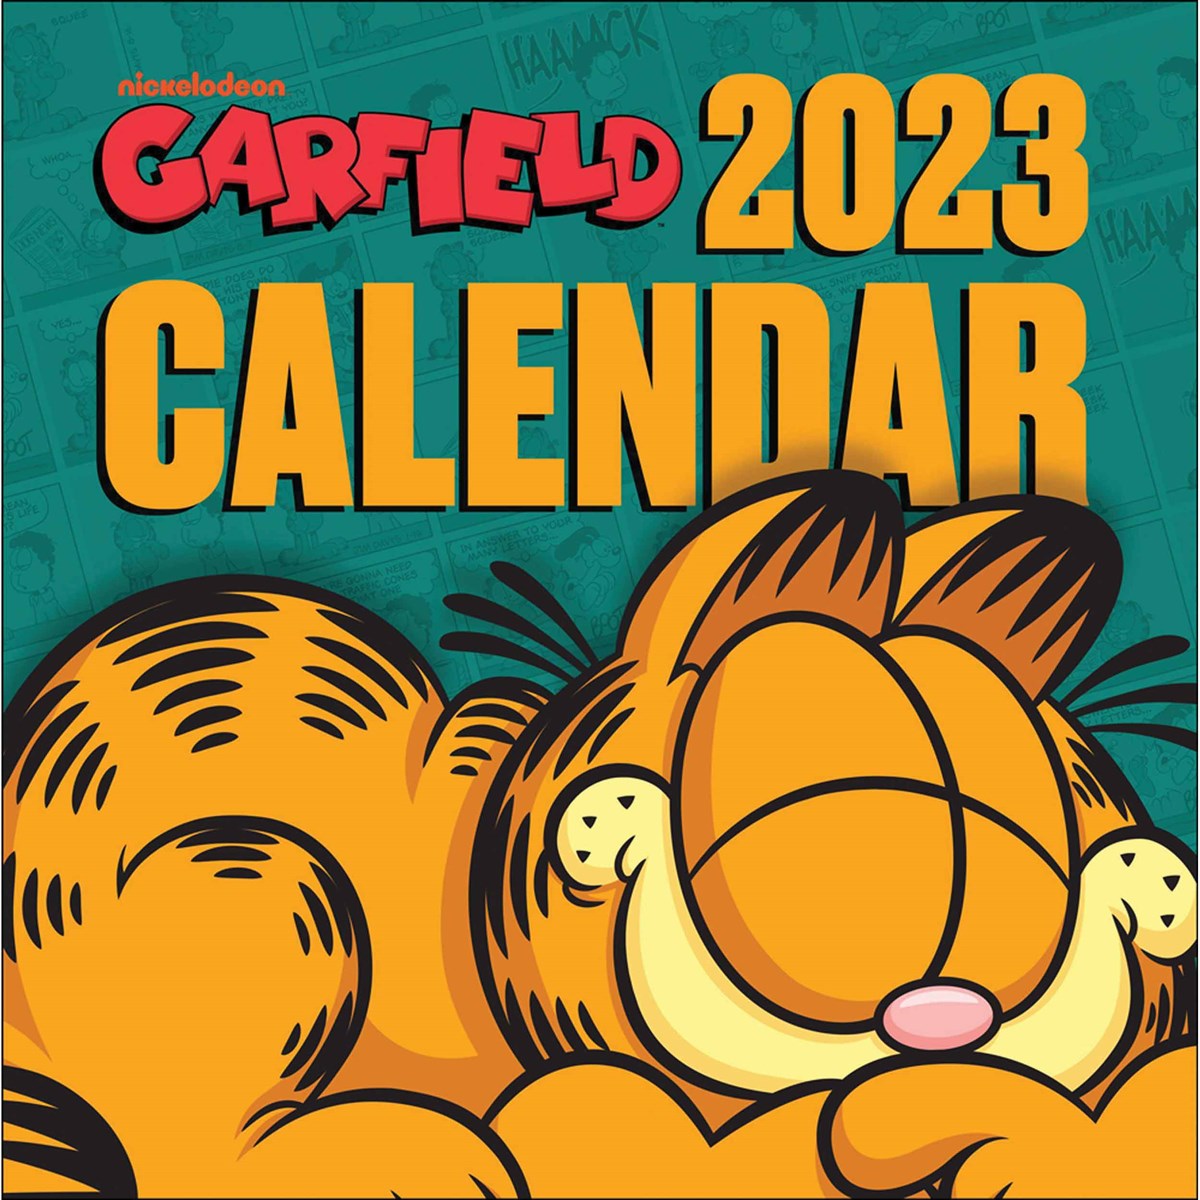 Garfield 2023 Calendars